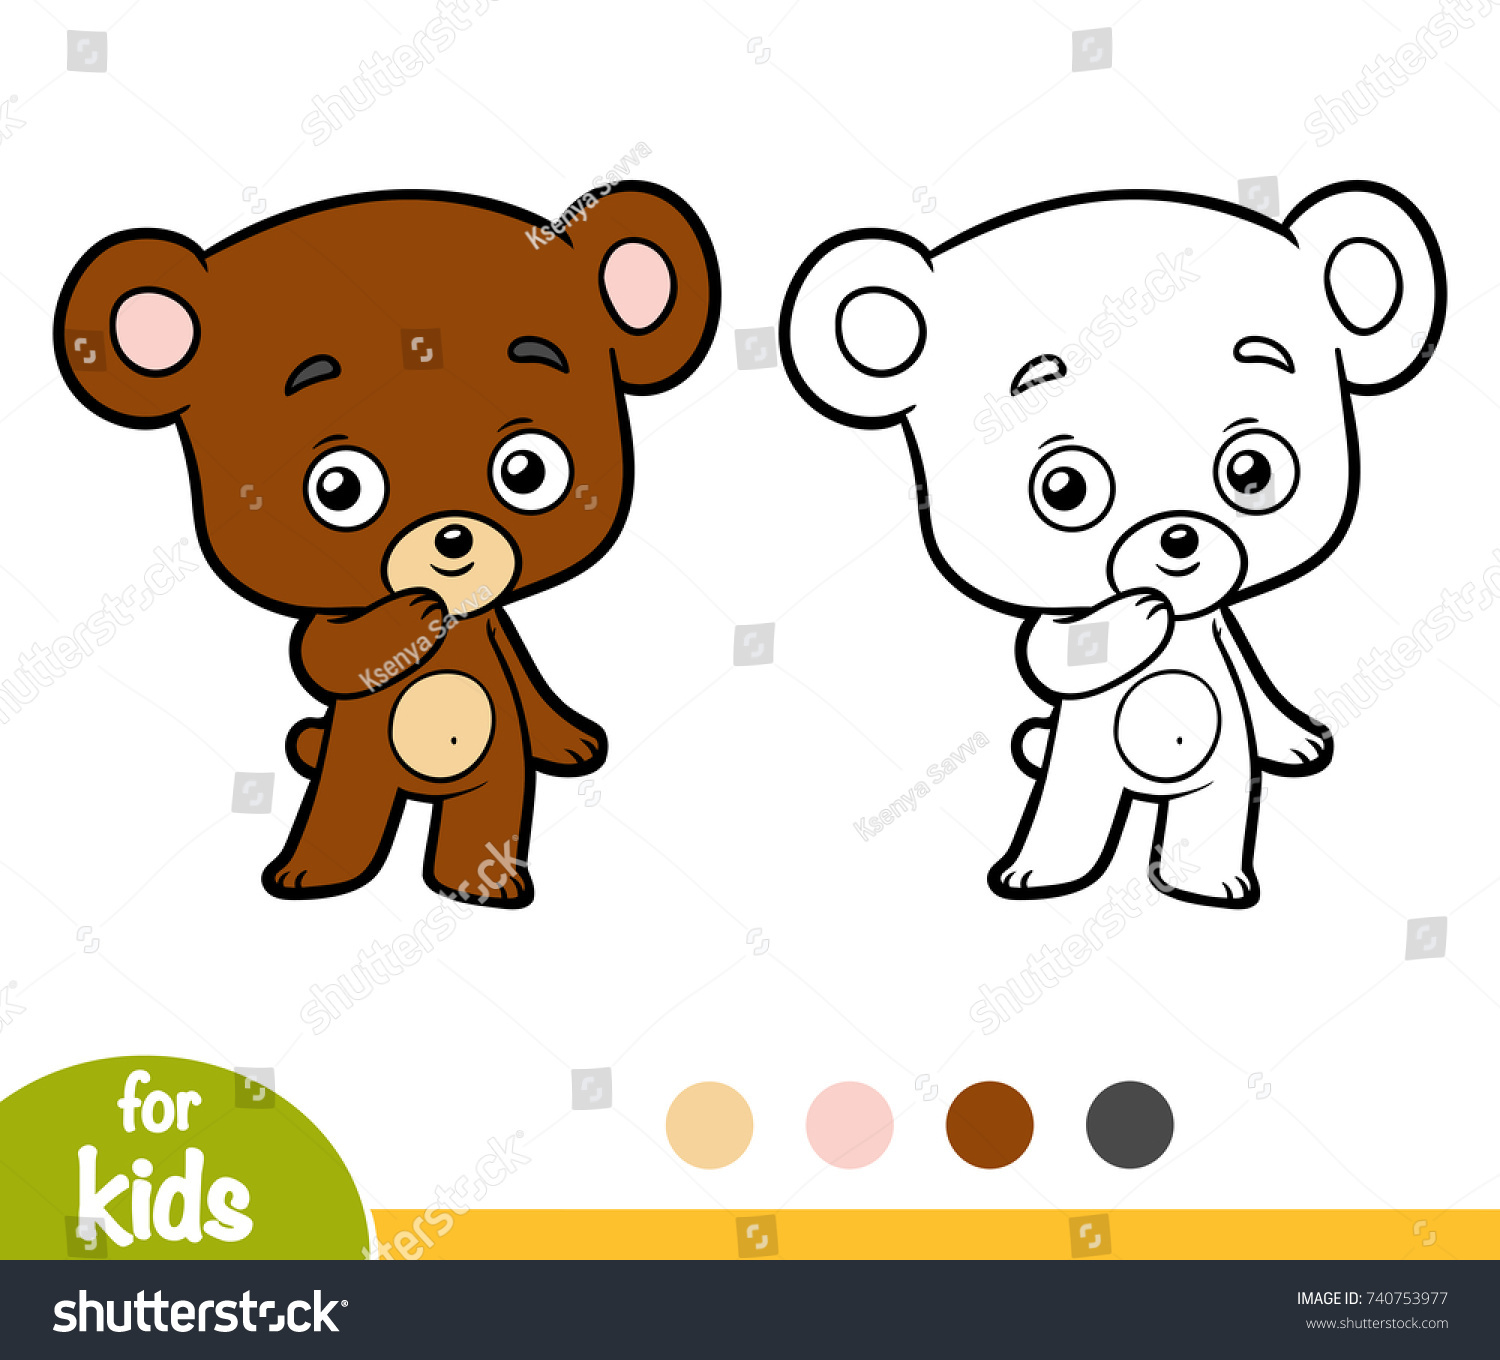 Раскраска к сказке два жадных медвежонка для детей